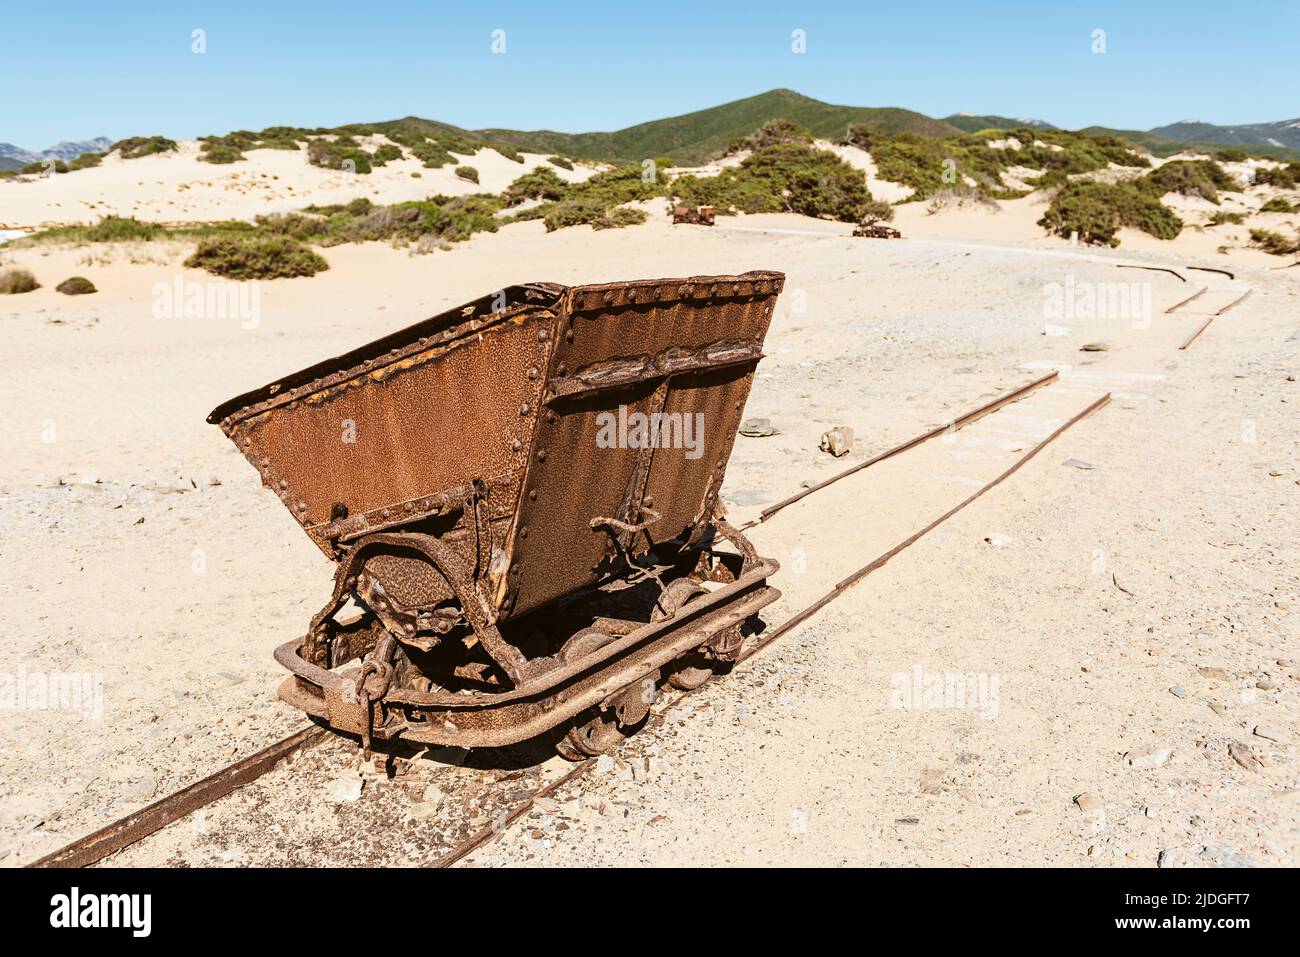 Vagones rotos oxidados y chatarra de un ferrocarril desde las minas de plomo y zinc hasta las dunas de arena cerca de la playa de Piscinas, Costa Verde, Cerdeña, Italia Foto de stock